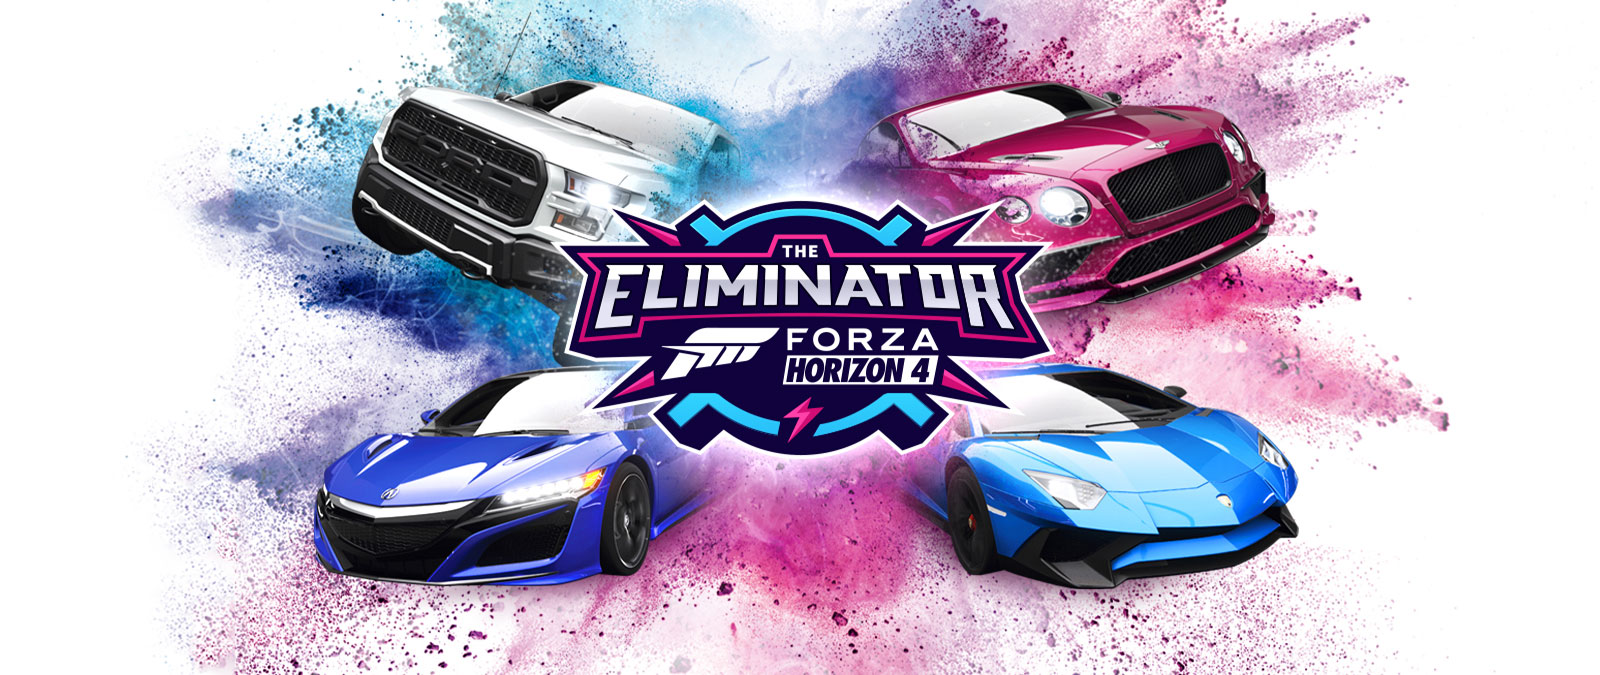 The Eliminator, логотип Forza Horizon 4, четыре автомобиля на фоне разлетающегося во все стороны голубого и розового порошка